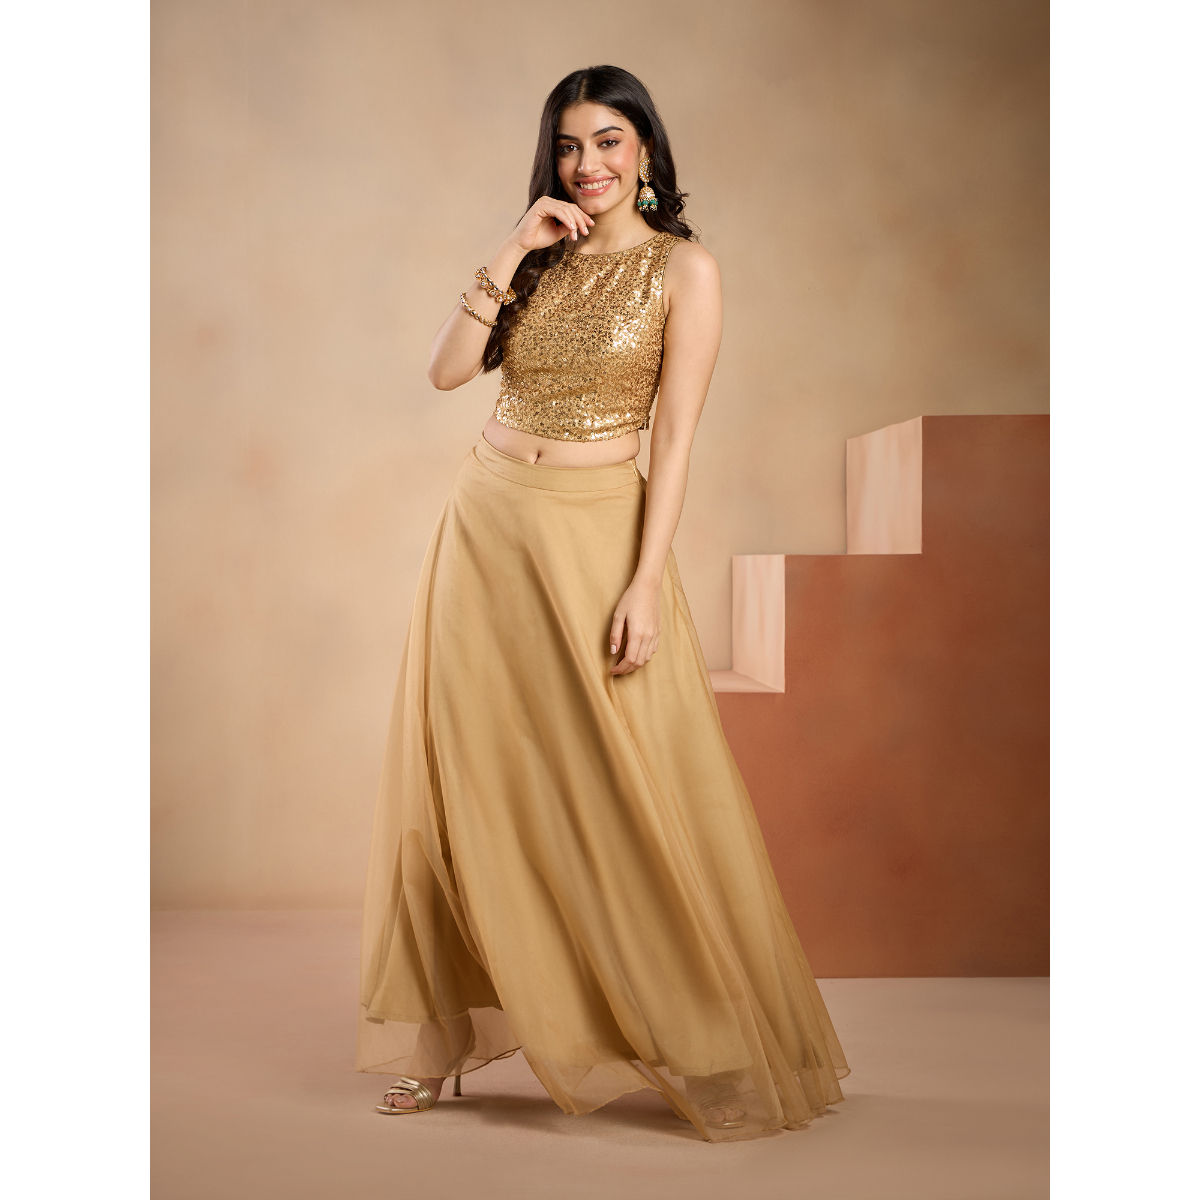 Diya Crop Top and Gold Skirt – The Anarkali Shop